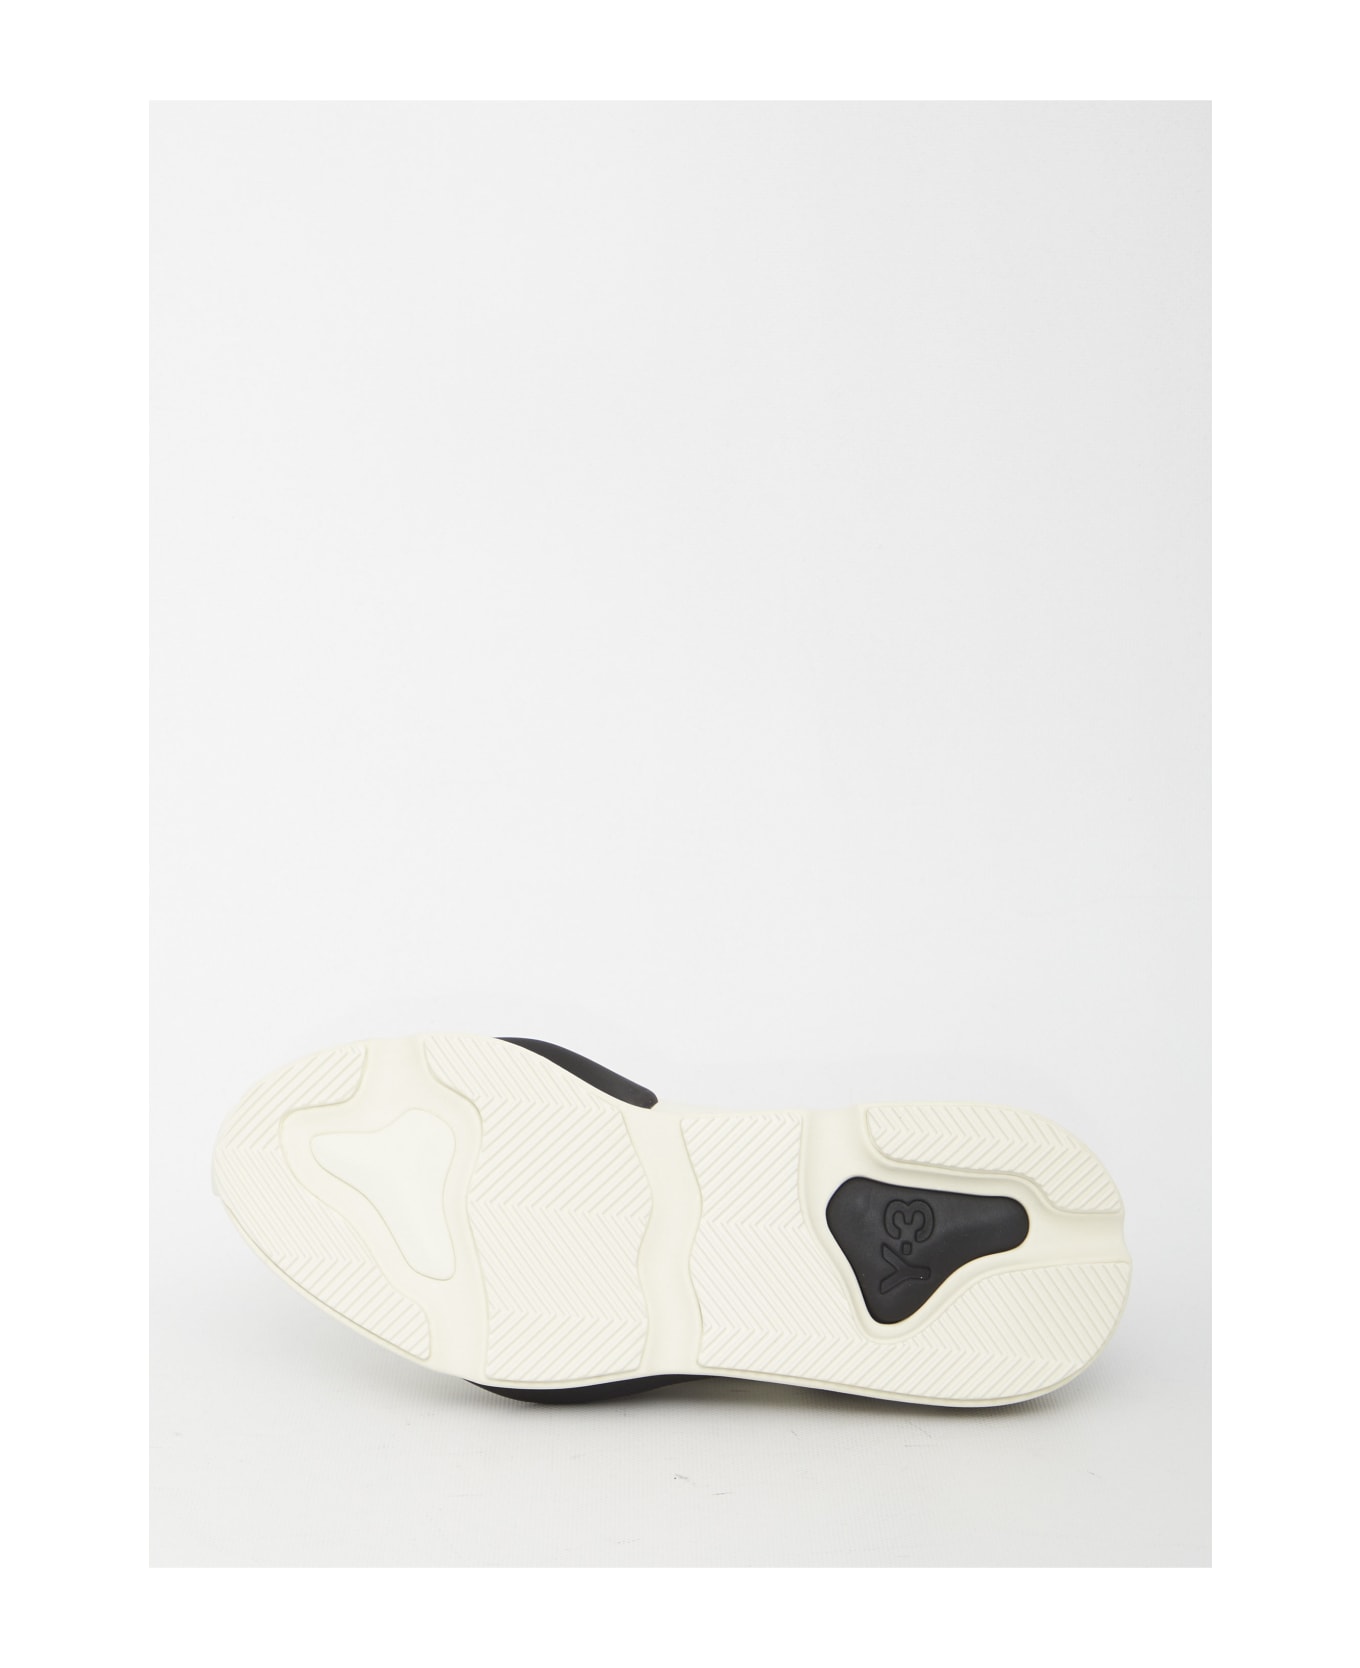 Y-3 Kaiwa Sneakers - White Black